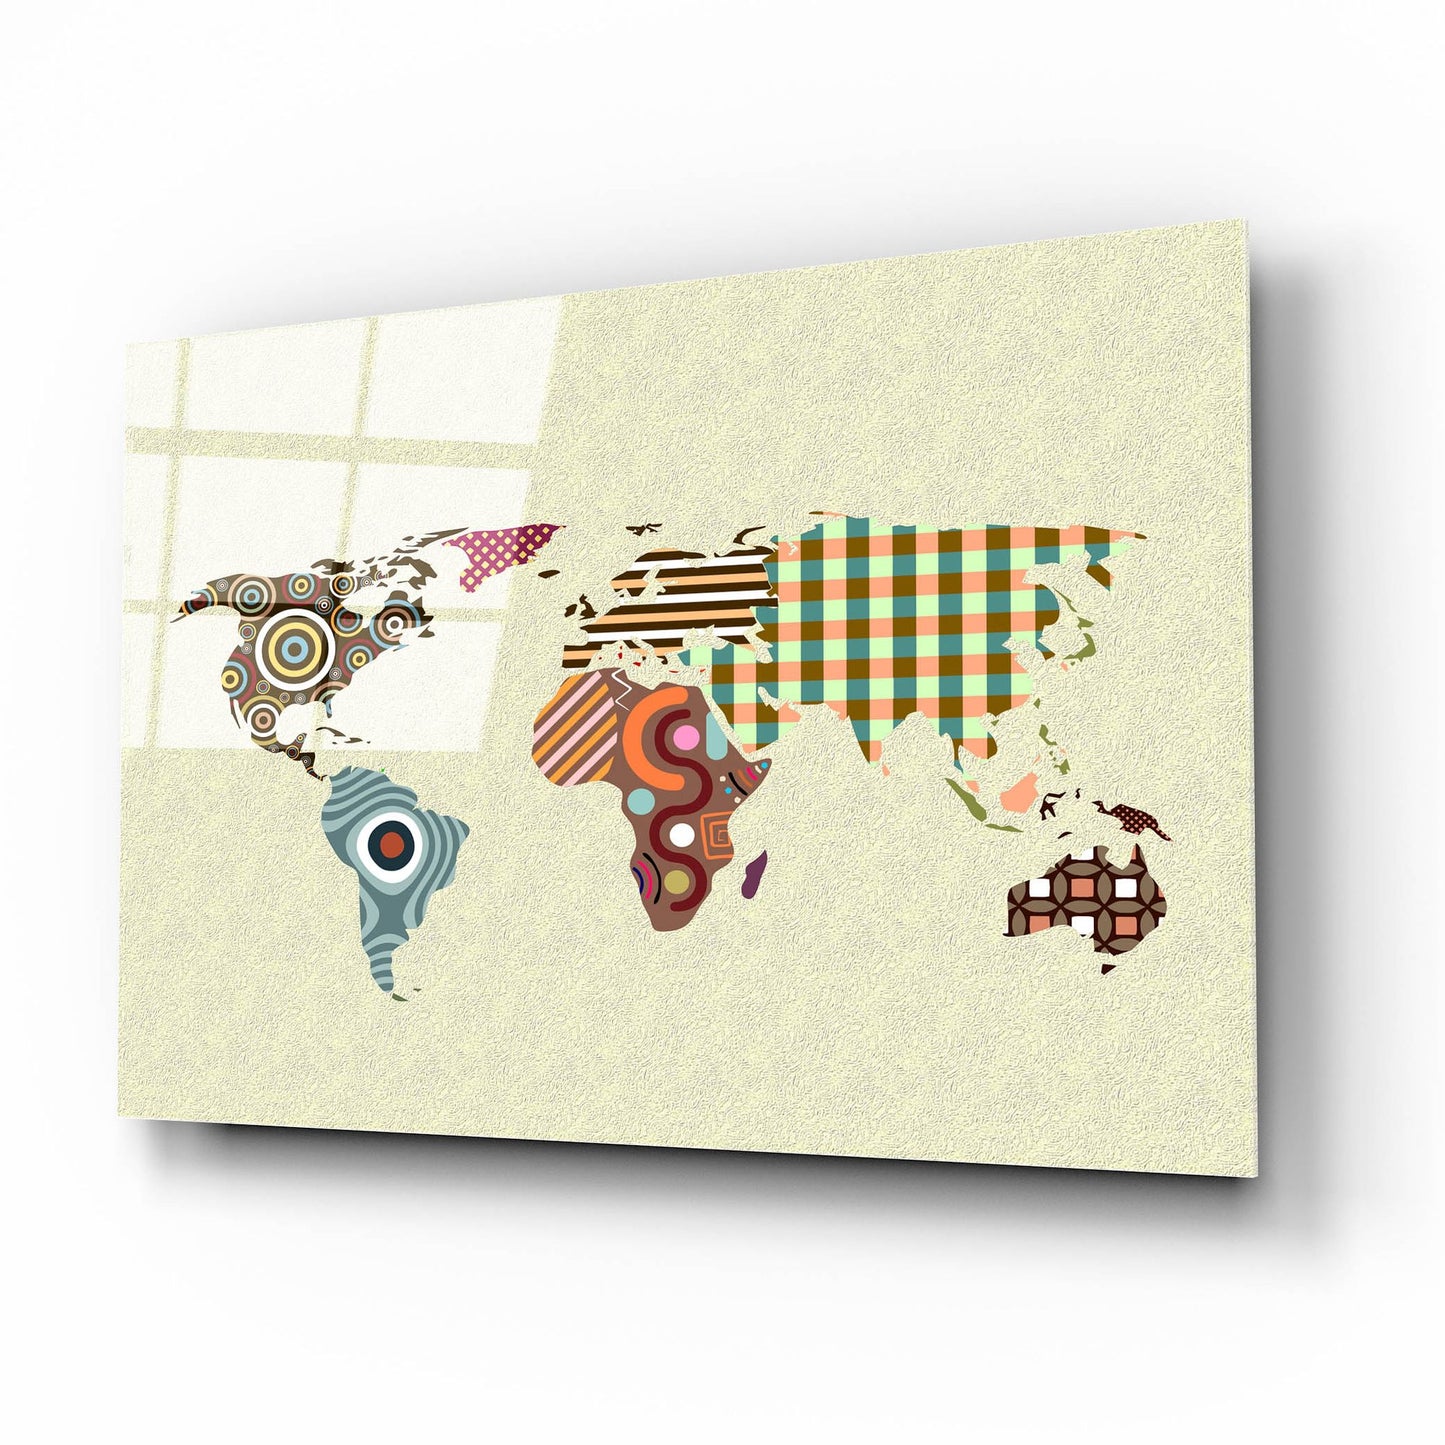 Epic Art 'World Map' by Lanre Adefioye, Acrylic Glass Wall Art,16x12